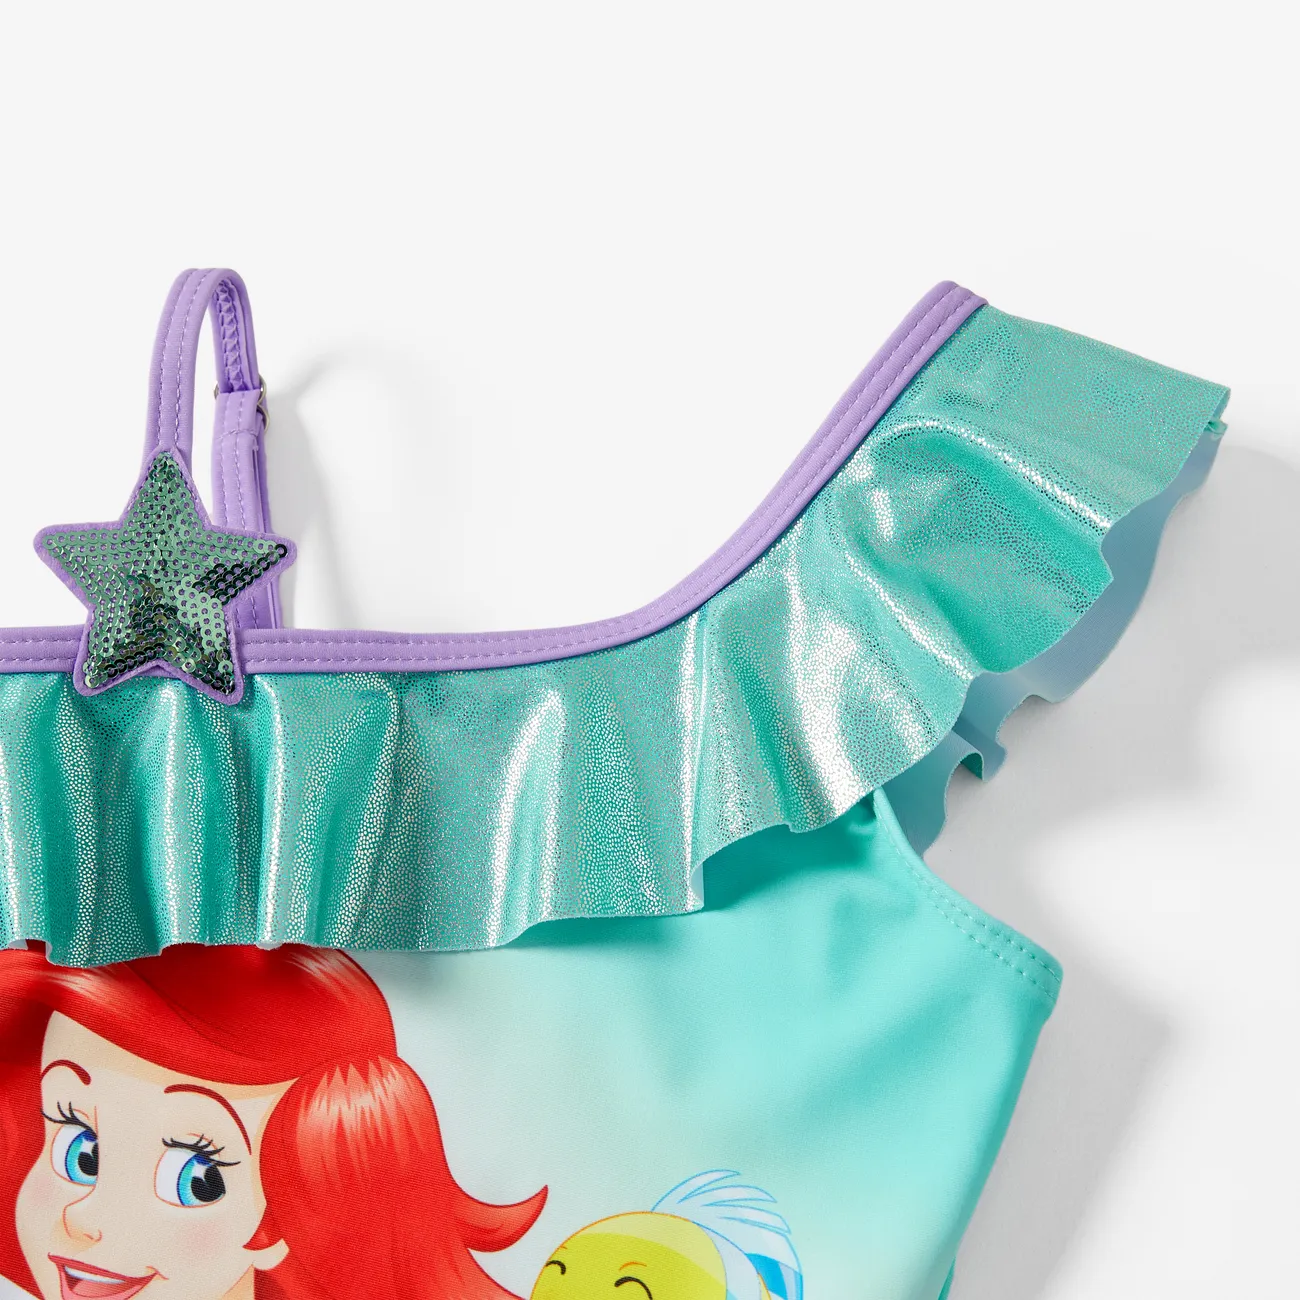 Disney Princess Toddler Girls Ariel Merimaid Swimsuit Green big image 1